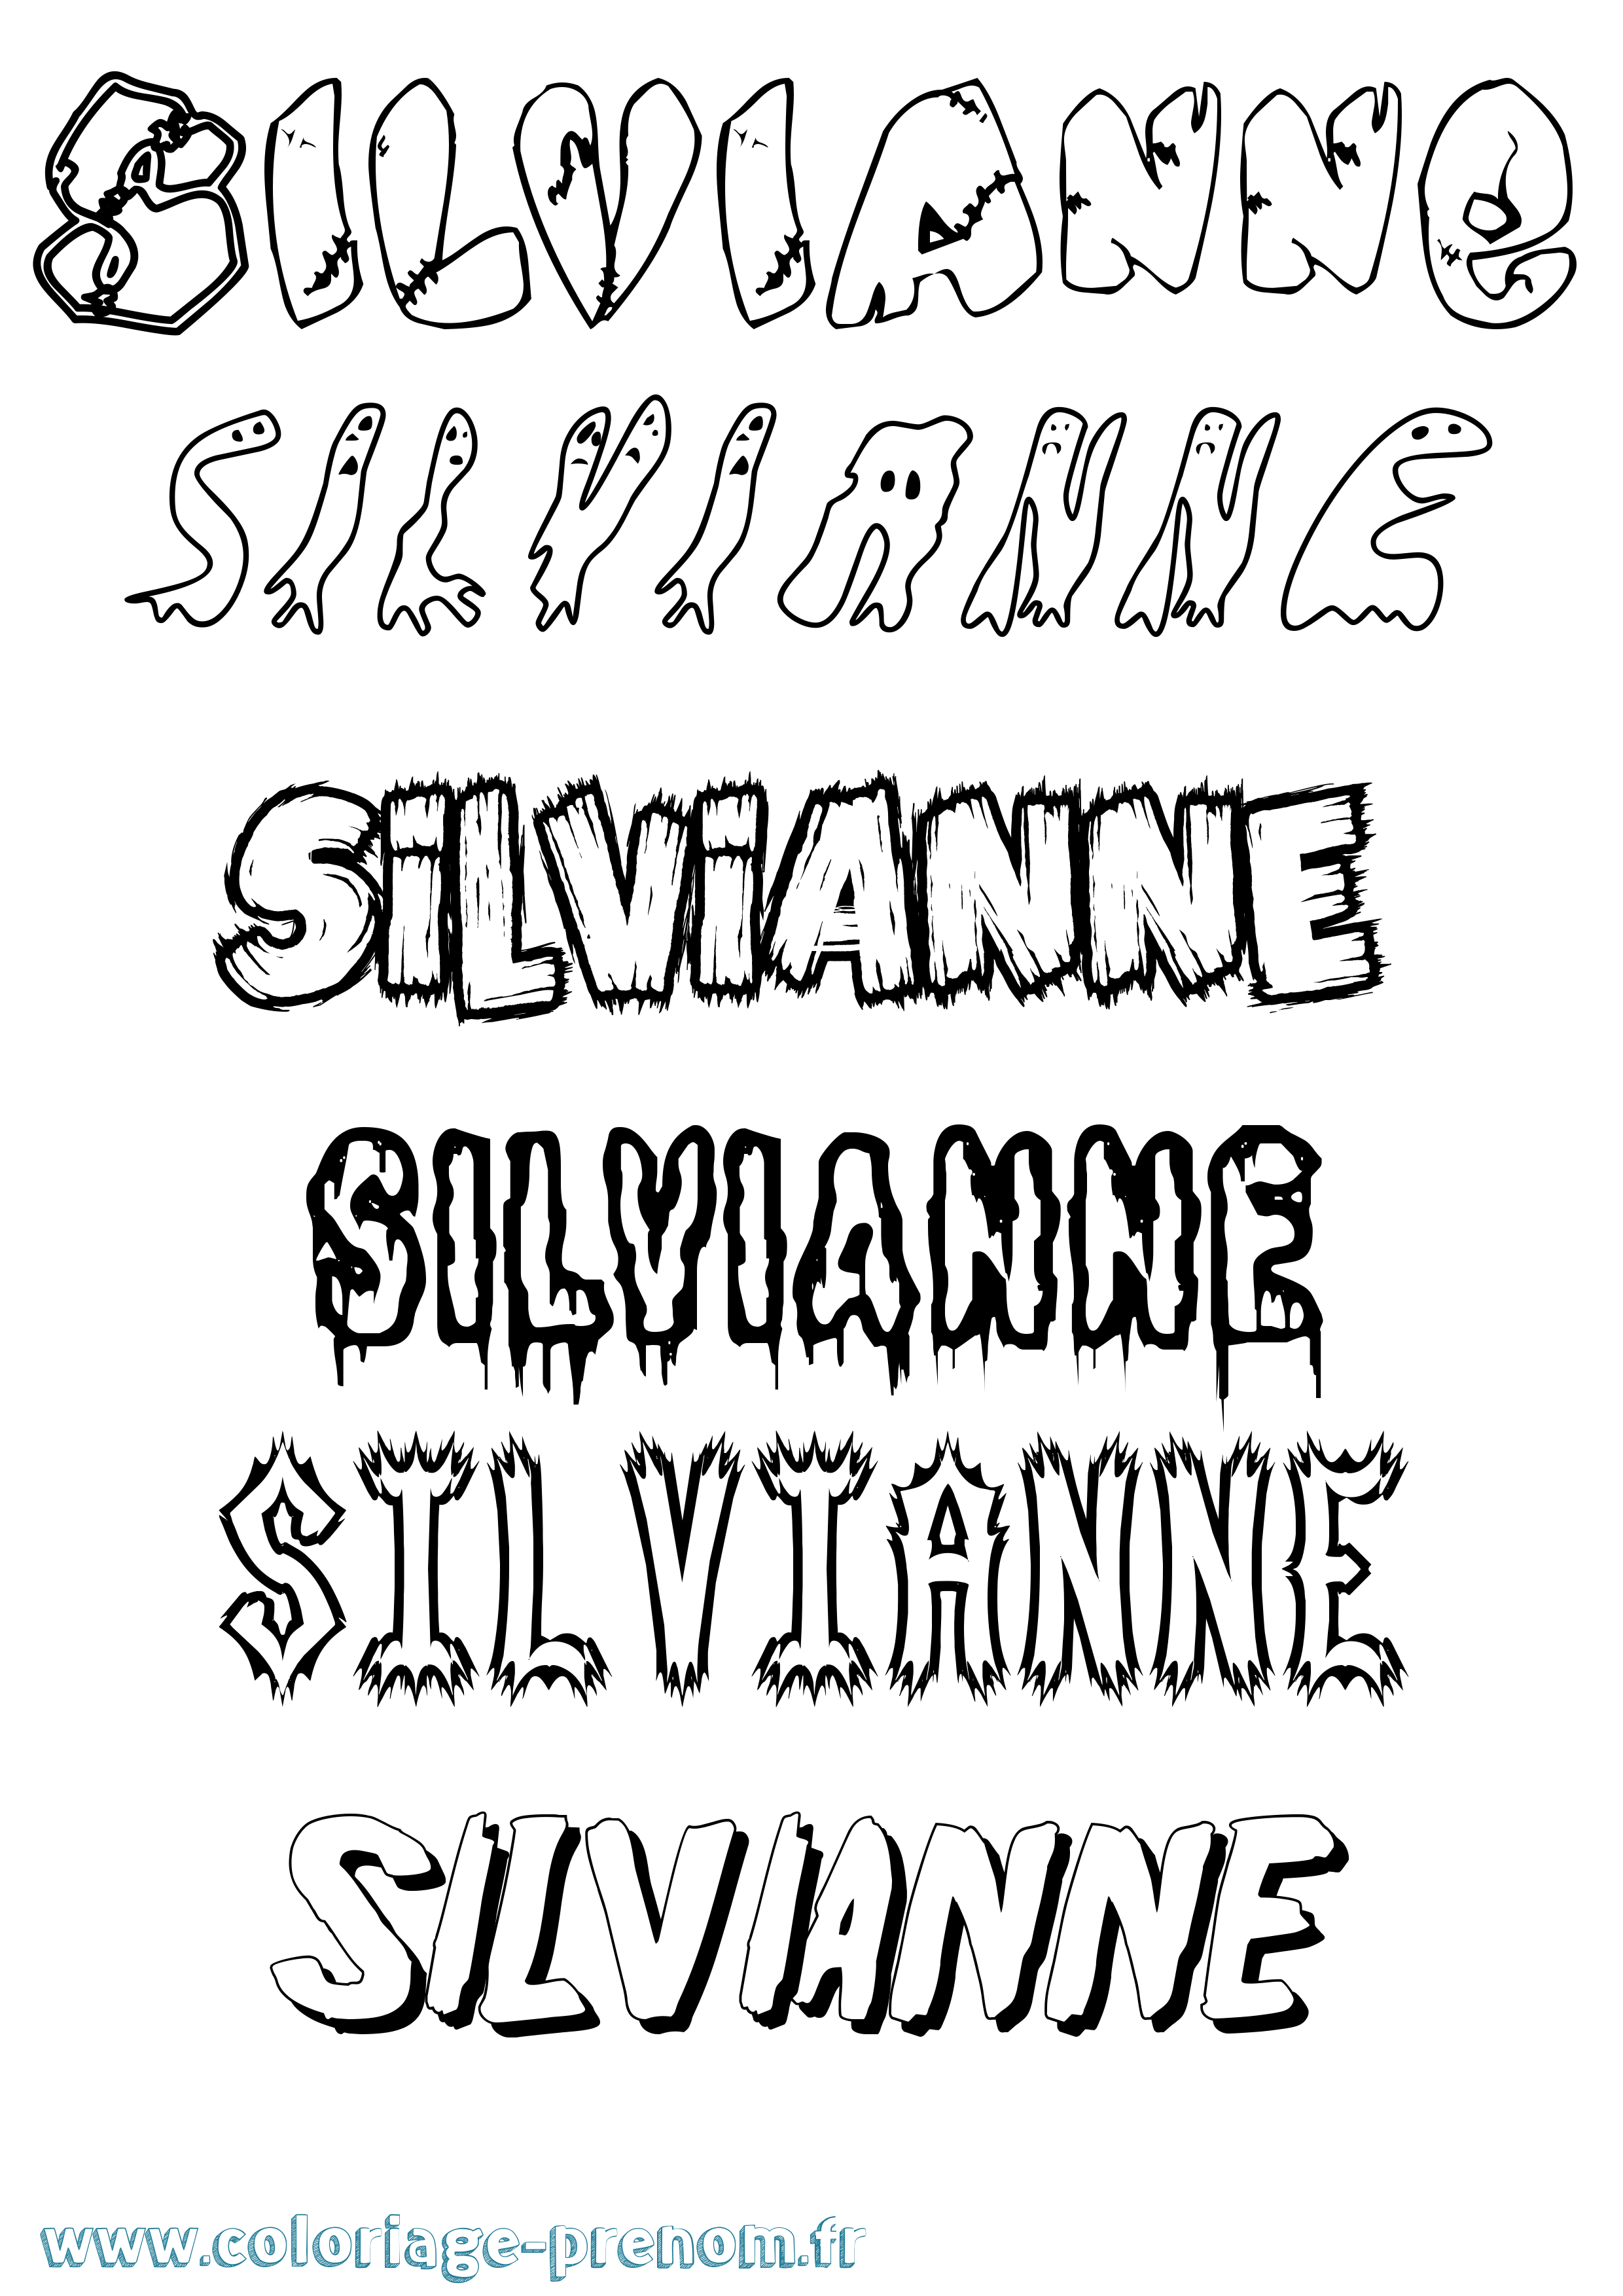 Coloriage prénom Silvianne Frisson